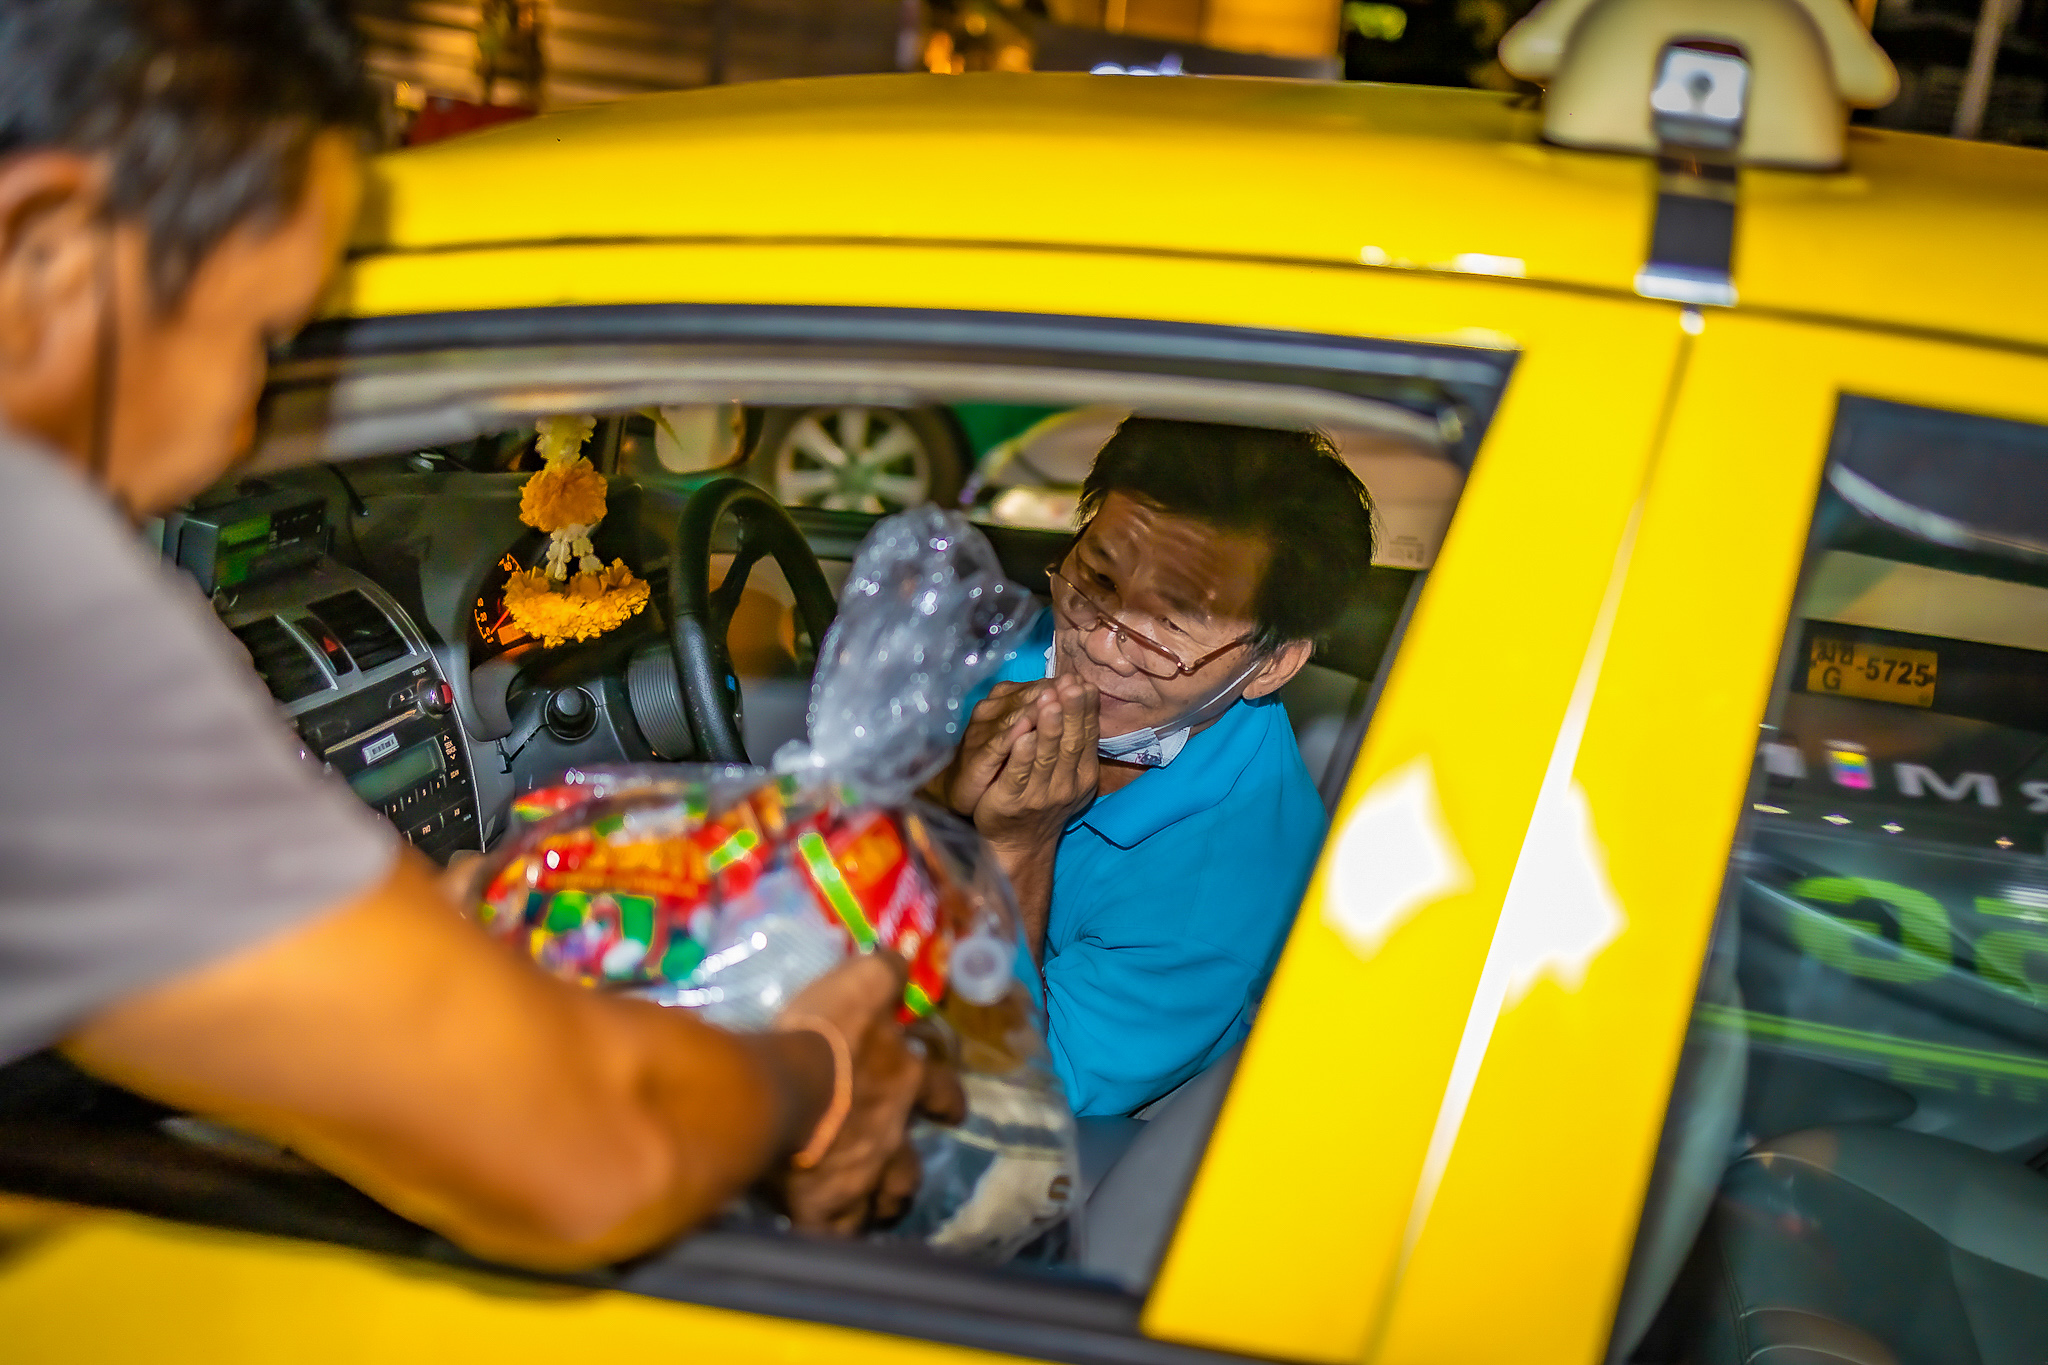 กลุ่มบริษัทแพนเธรามอบถุงยังชีพแก่พนักงานขับแท็กซี่ “ที่อาจถูกมองข้าม” กว่า 400 คน